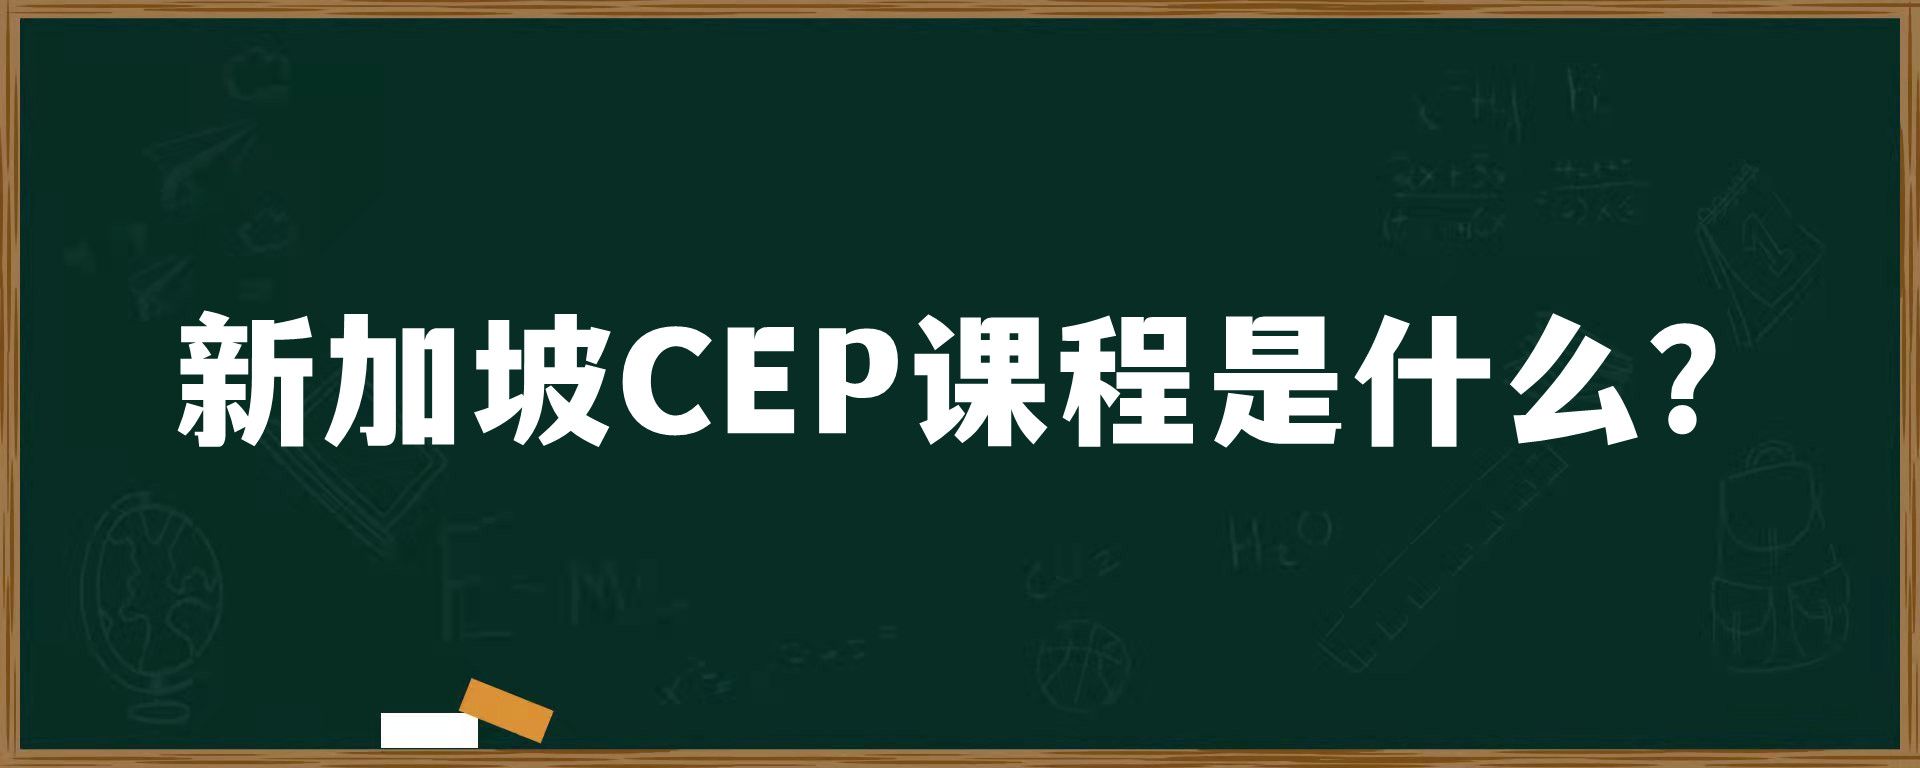 新加坡CEP课程是什么？